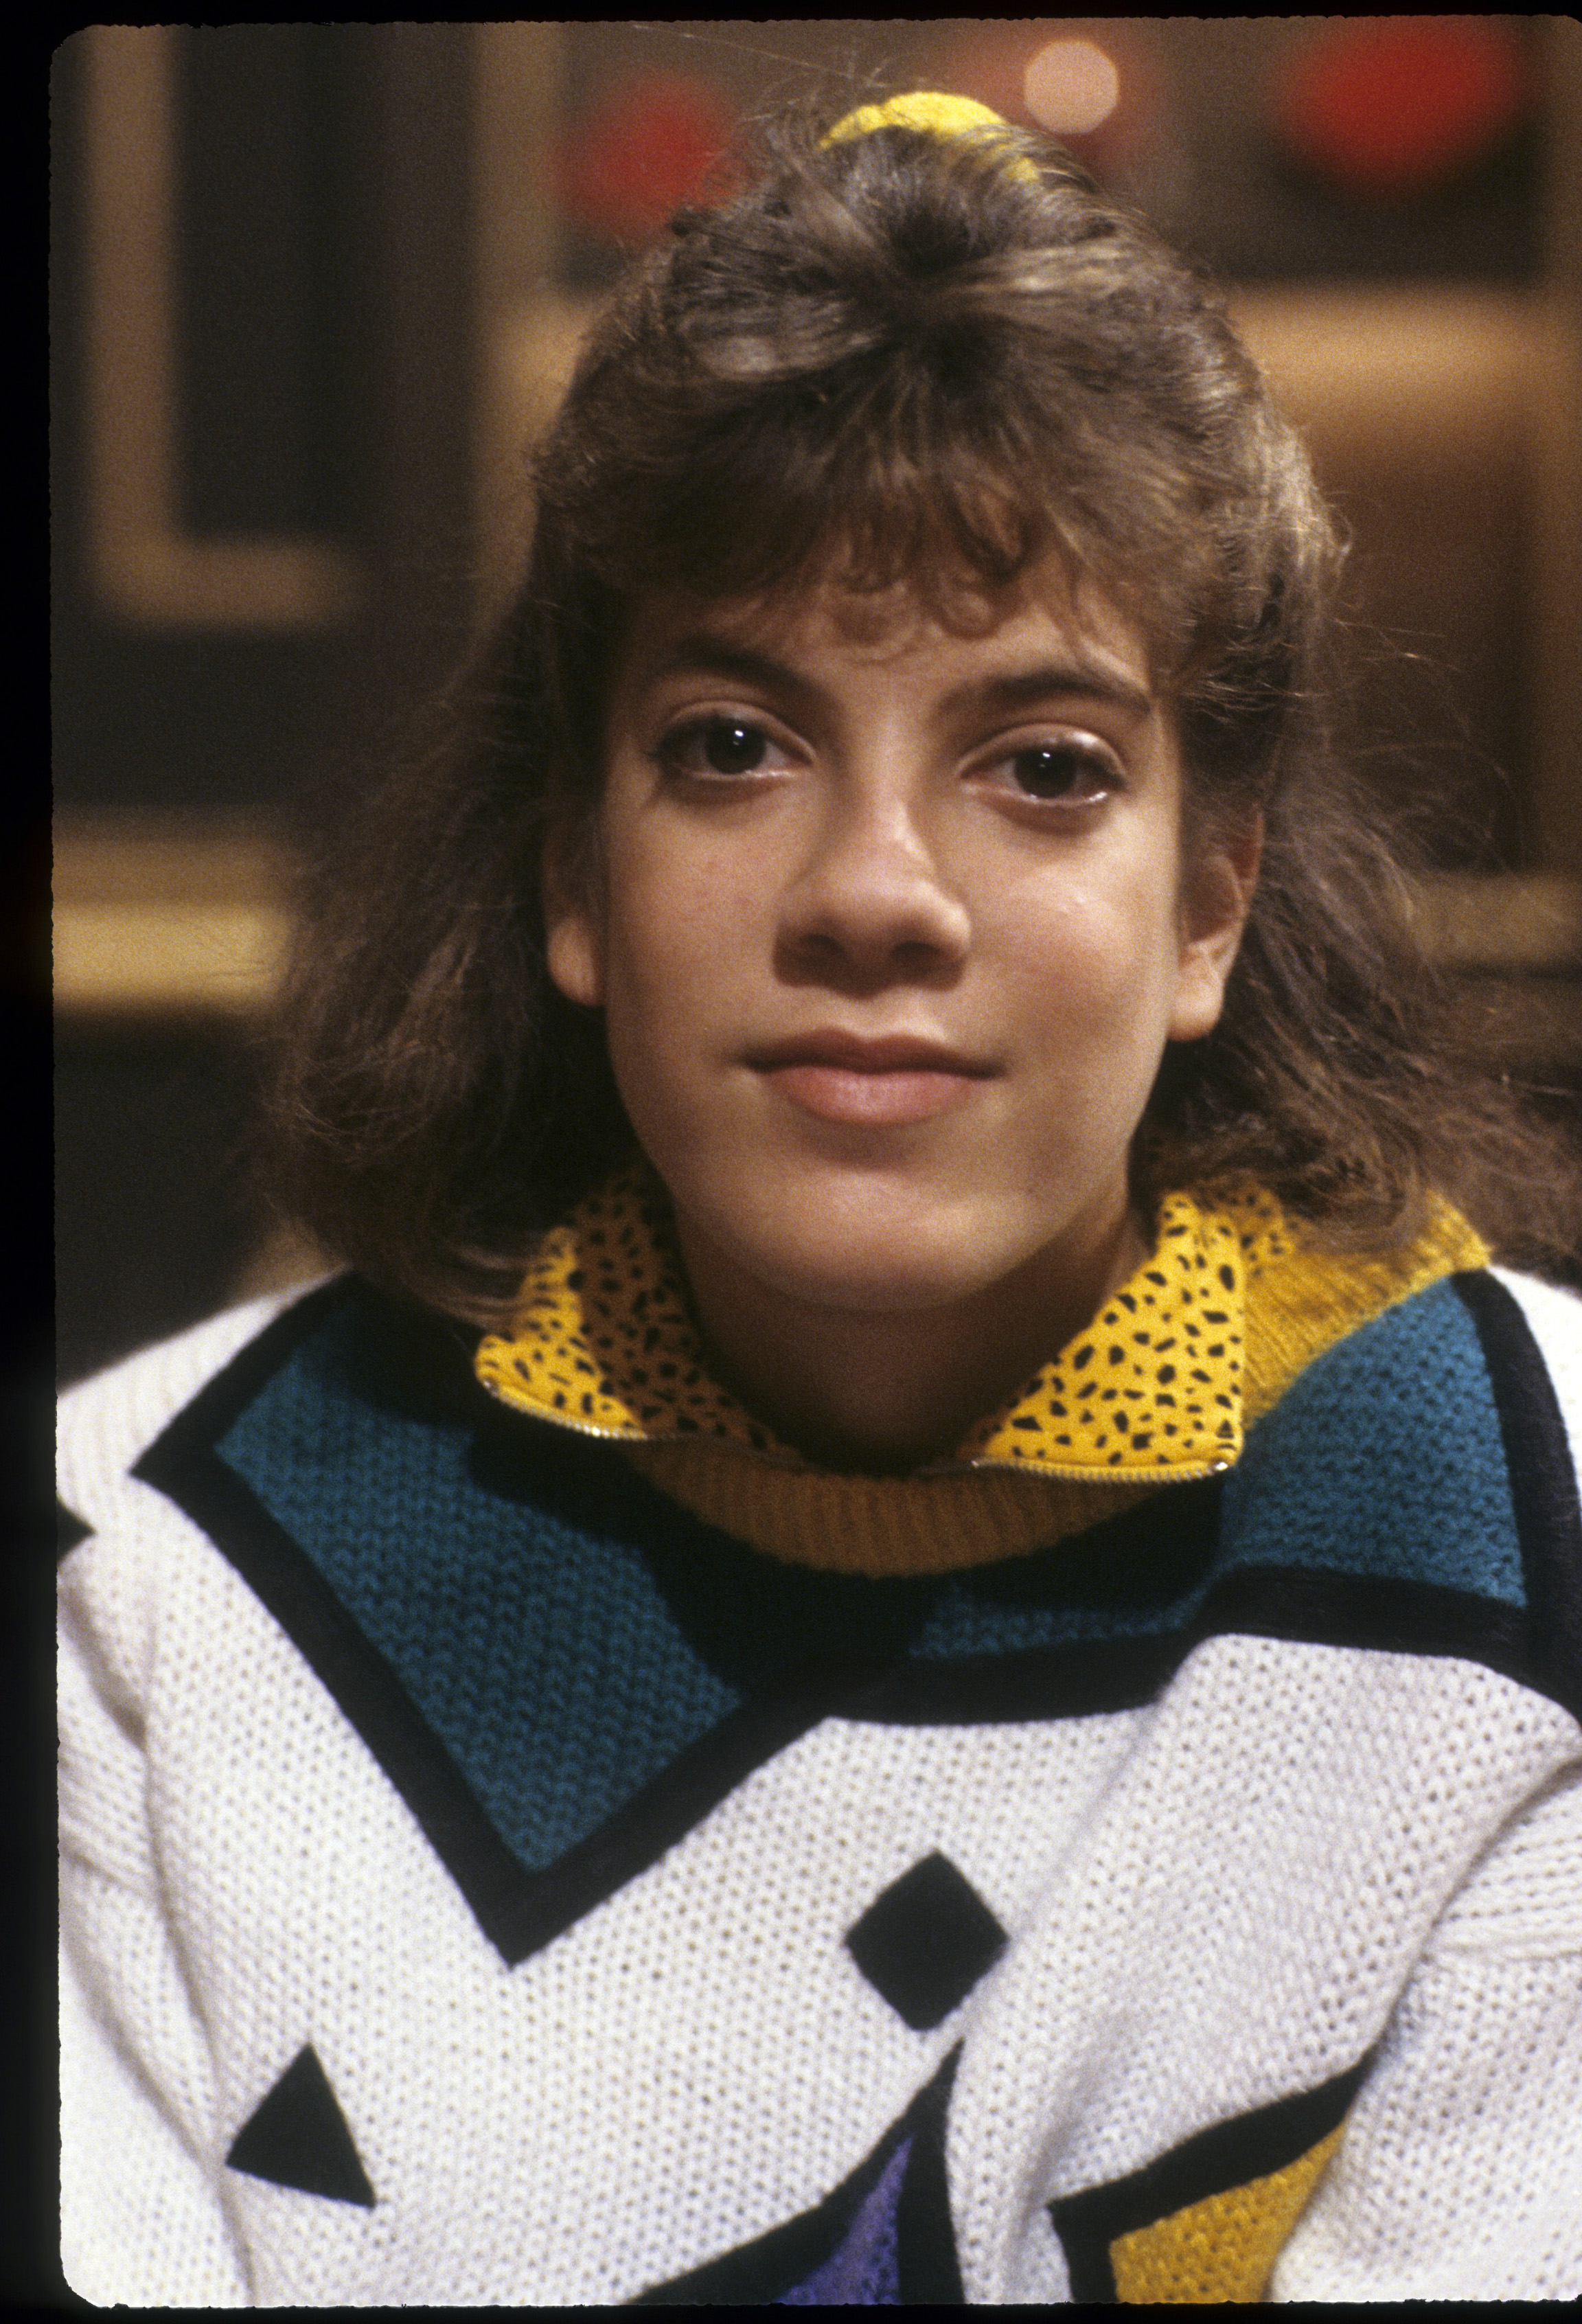 Tori Spelling sur le plateau de "Hotel" en 1987 | Source : Getty Images